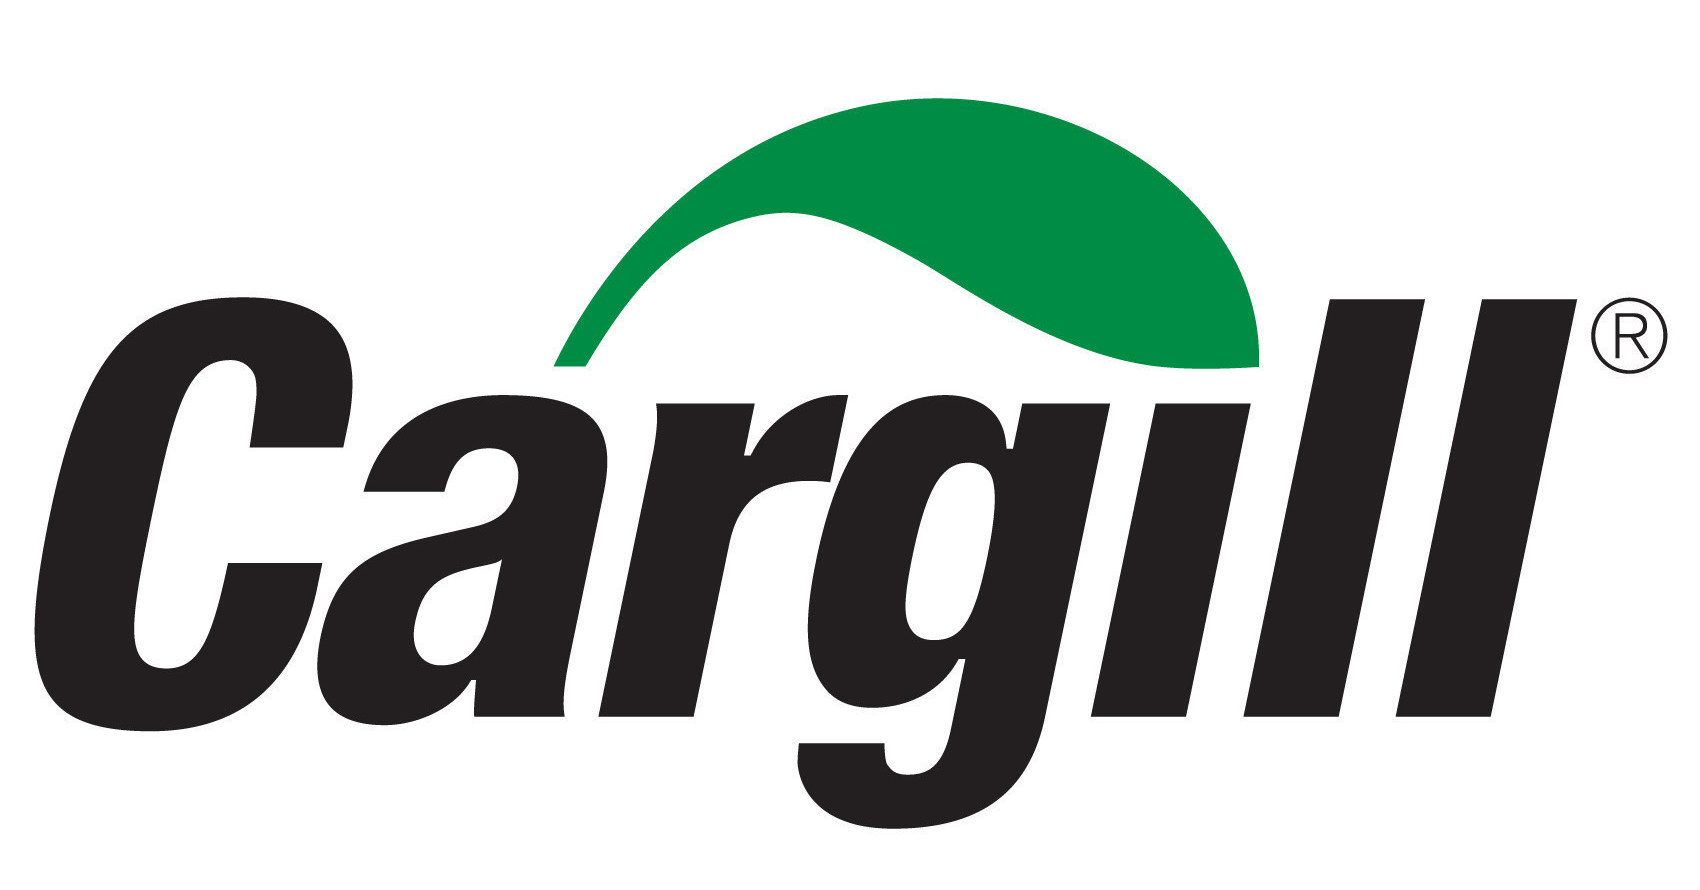 Cargill investerer i den sirkulære økonomien og bygger sitt første biodieselutvinningsanlegg fra avfall og rester